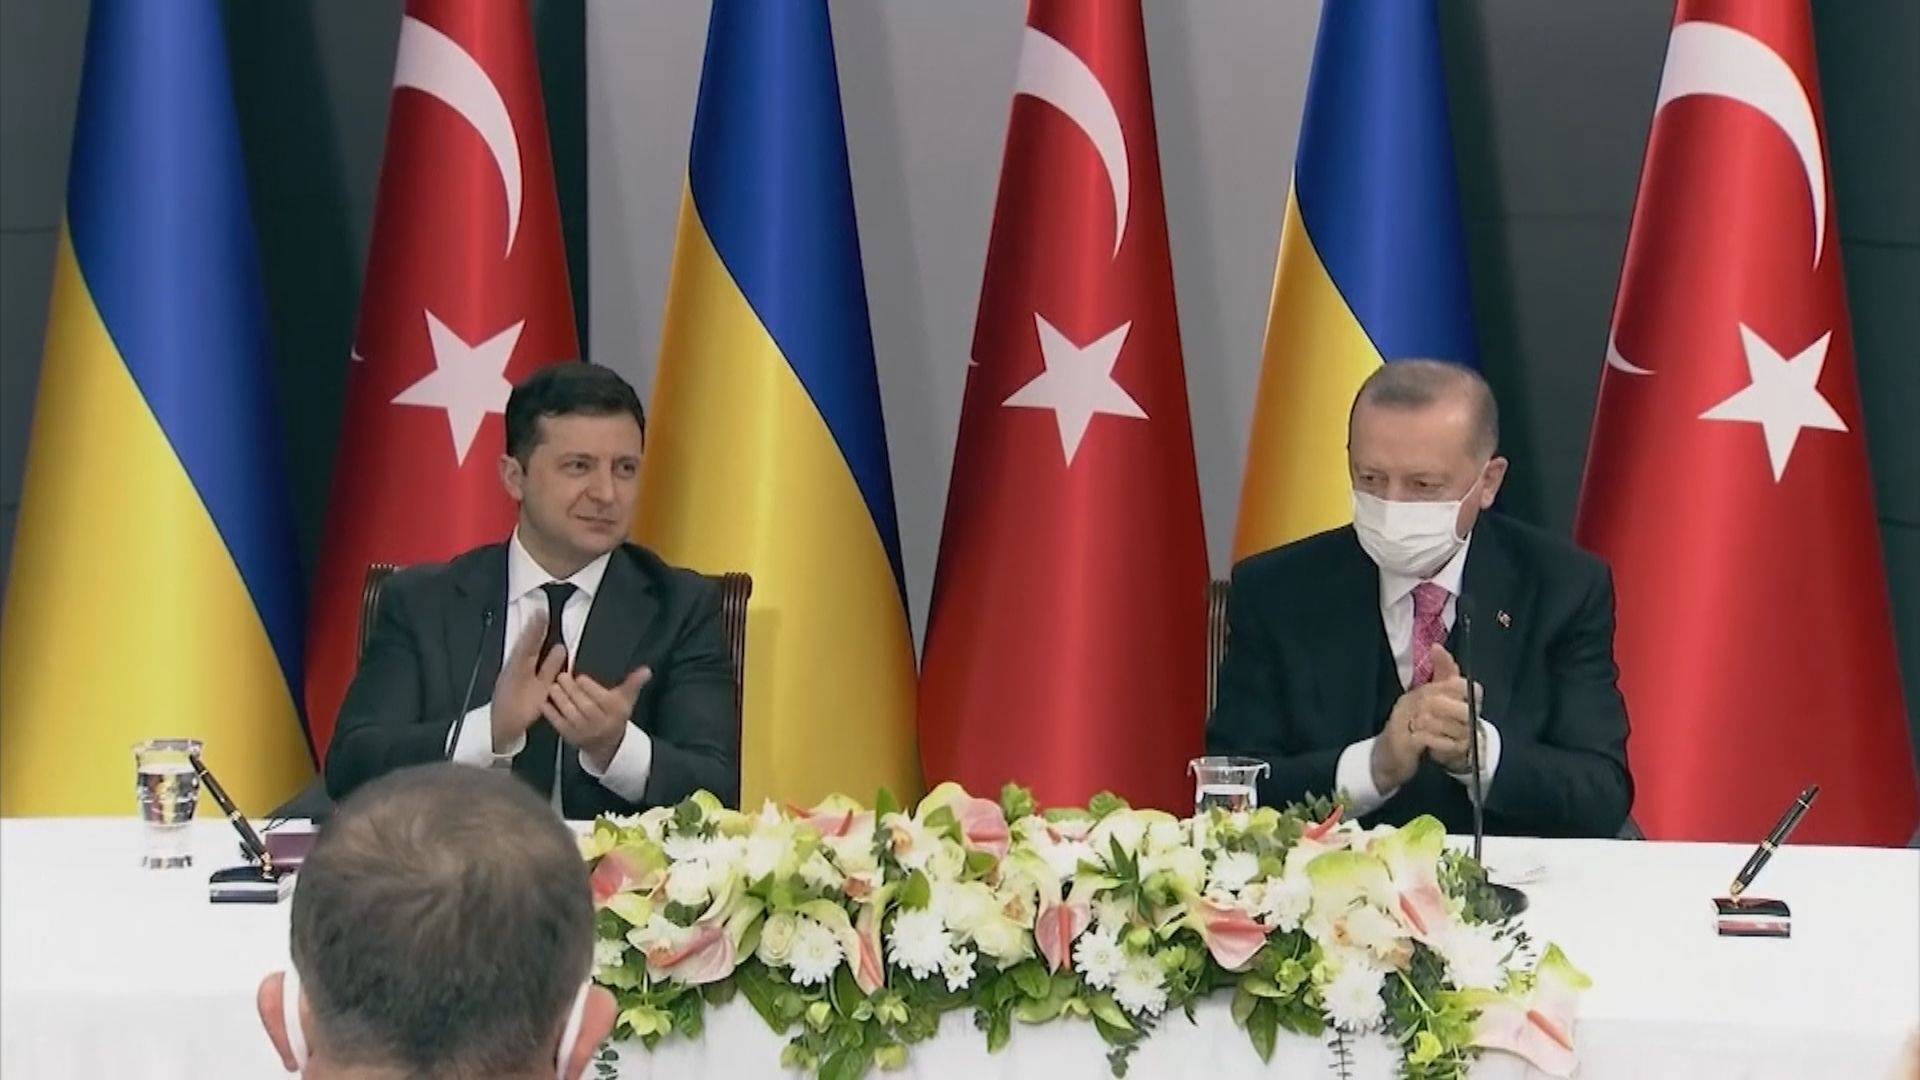 烏克蘭總統澤連斯基到訪土耳其